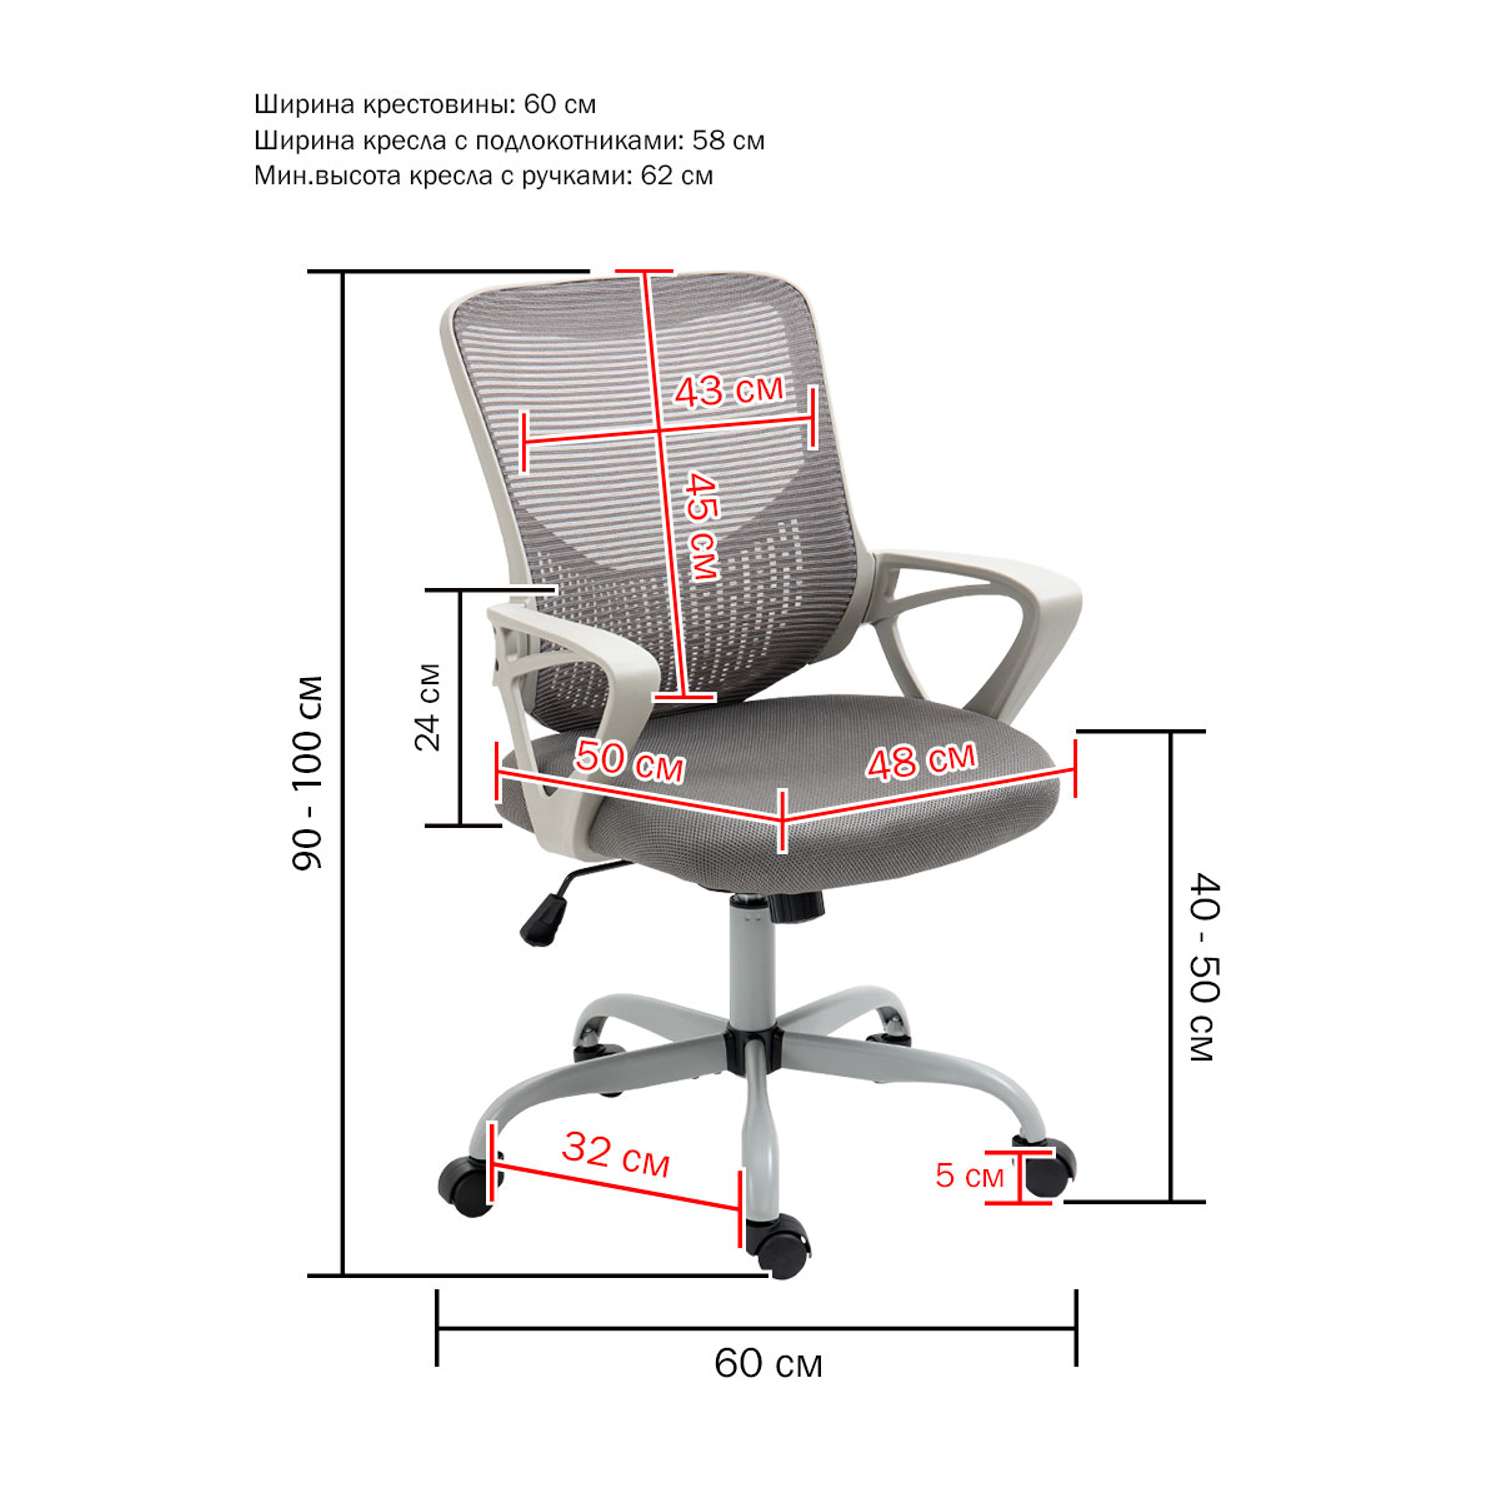 Компьютерное кресло SOKOLTEC С поддержкой для поясницы - фото 2